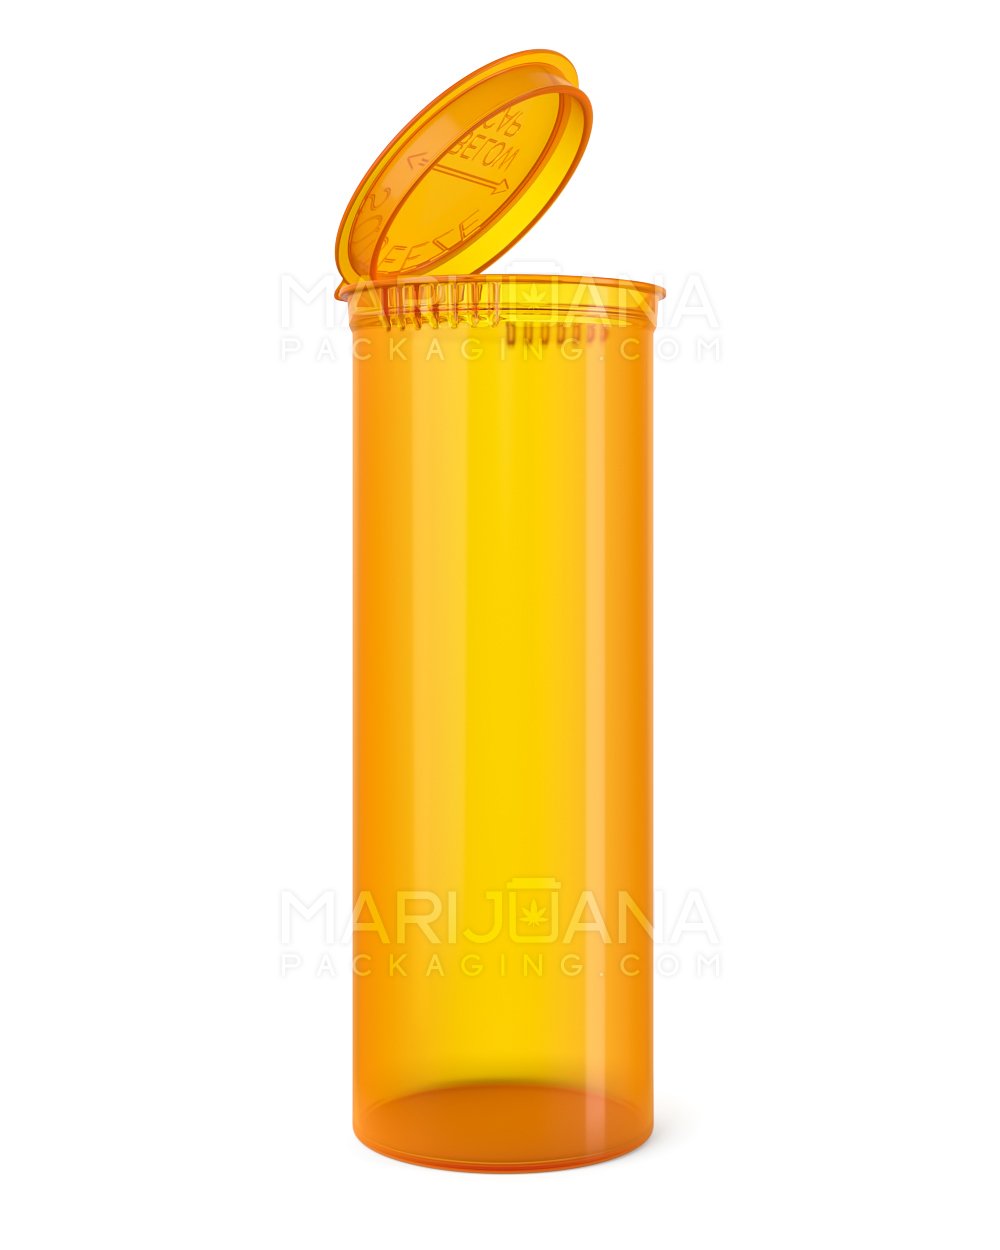 Child Resistant | Transparent Amber Pop Top Bottles | 60dr - 14g - 75 Count - 1